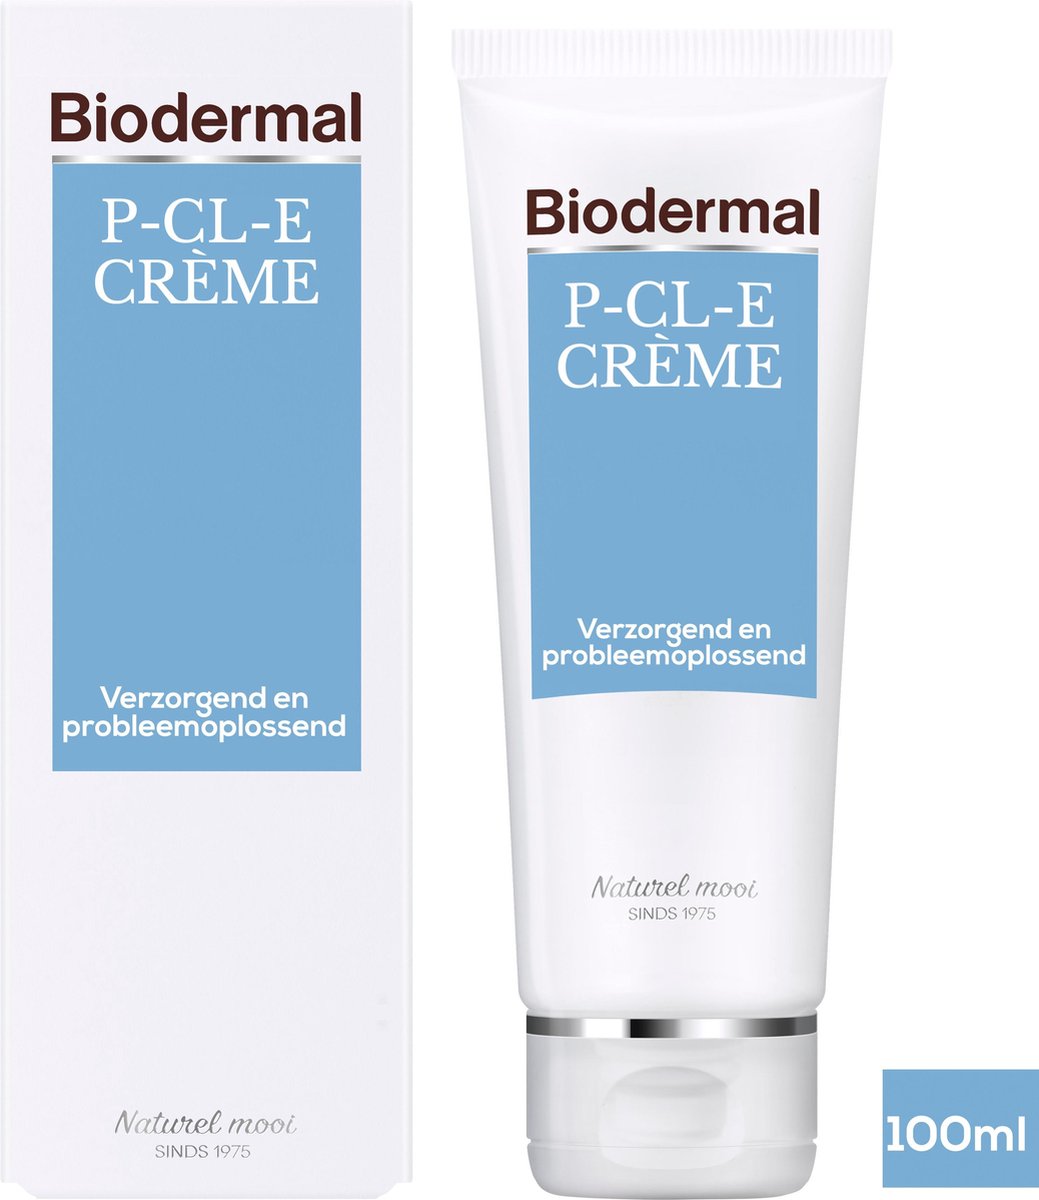 Biodermal P-CL-E Crème Gezichtscrème 100ml